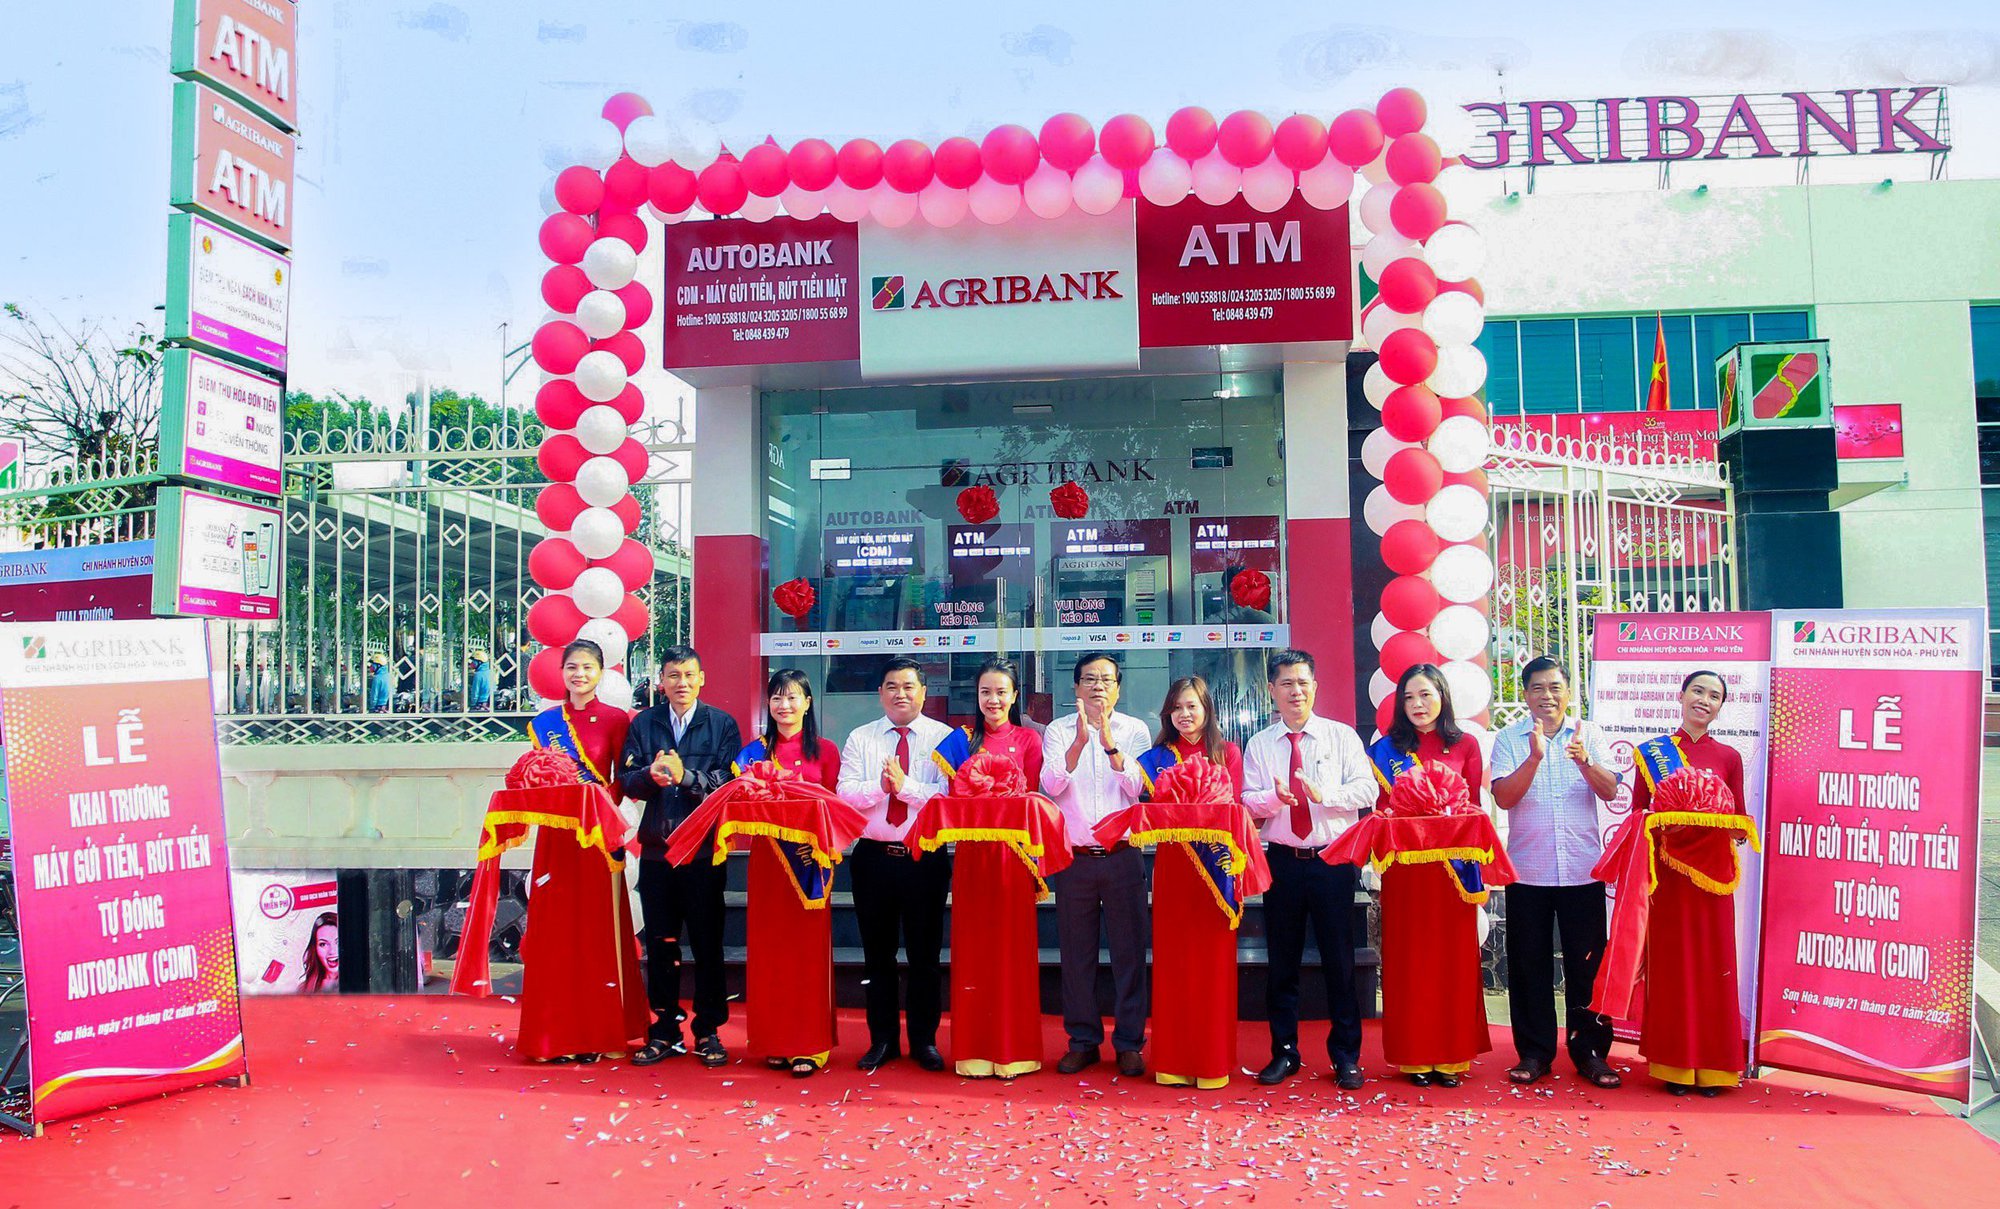 Agribank Phú Yên cung cấp dịch vụ ngân hàng hiện đại đến huyện miền núi Sơn Hòa - Ảnh 1.